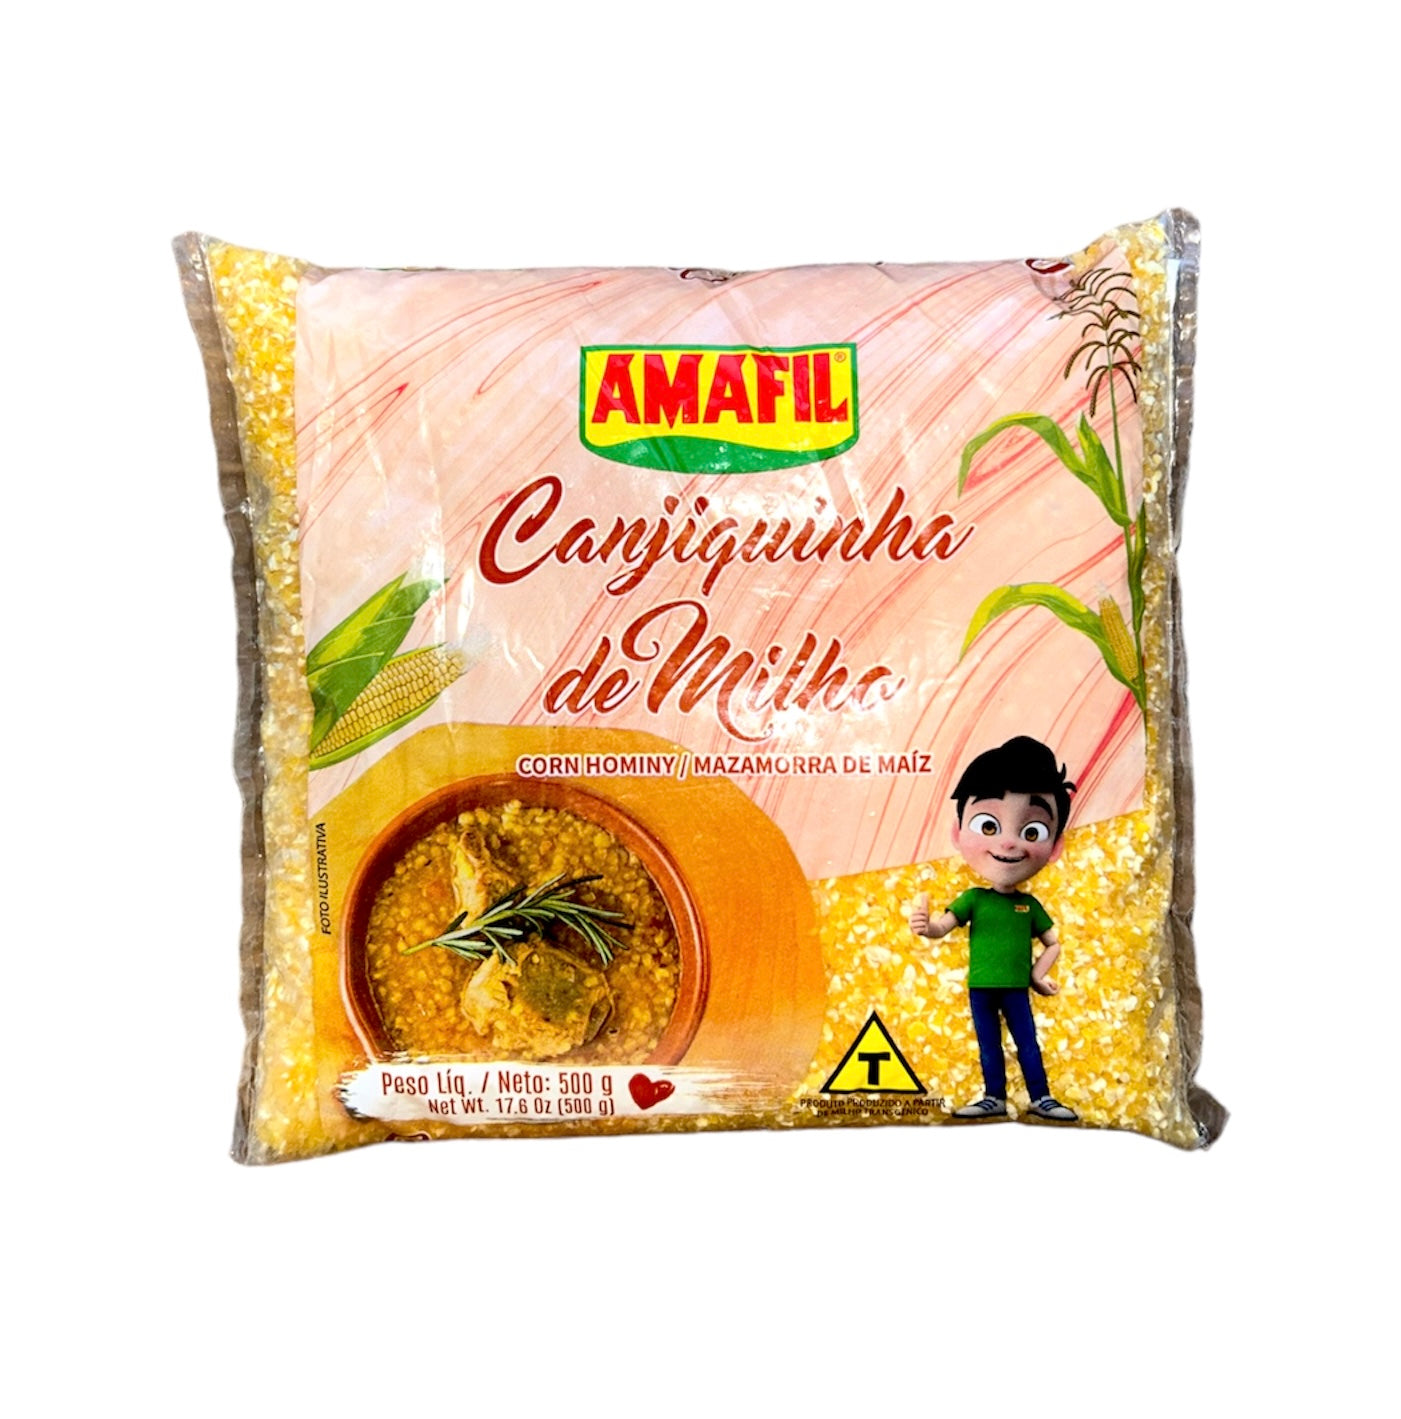 Amafil Canjiquinha de Milho | Corn kernels Meal